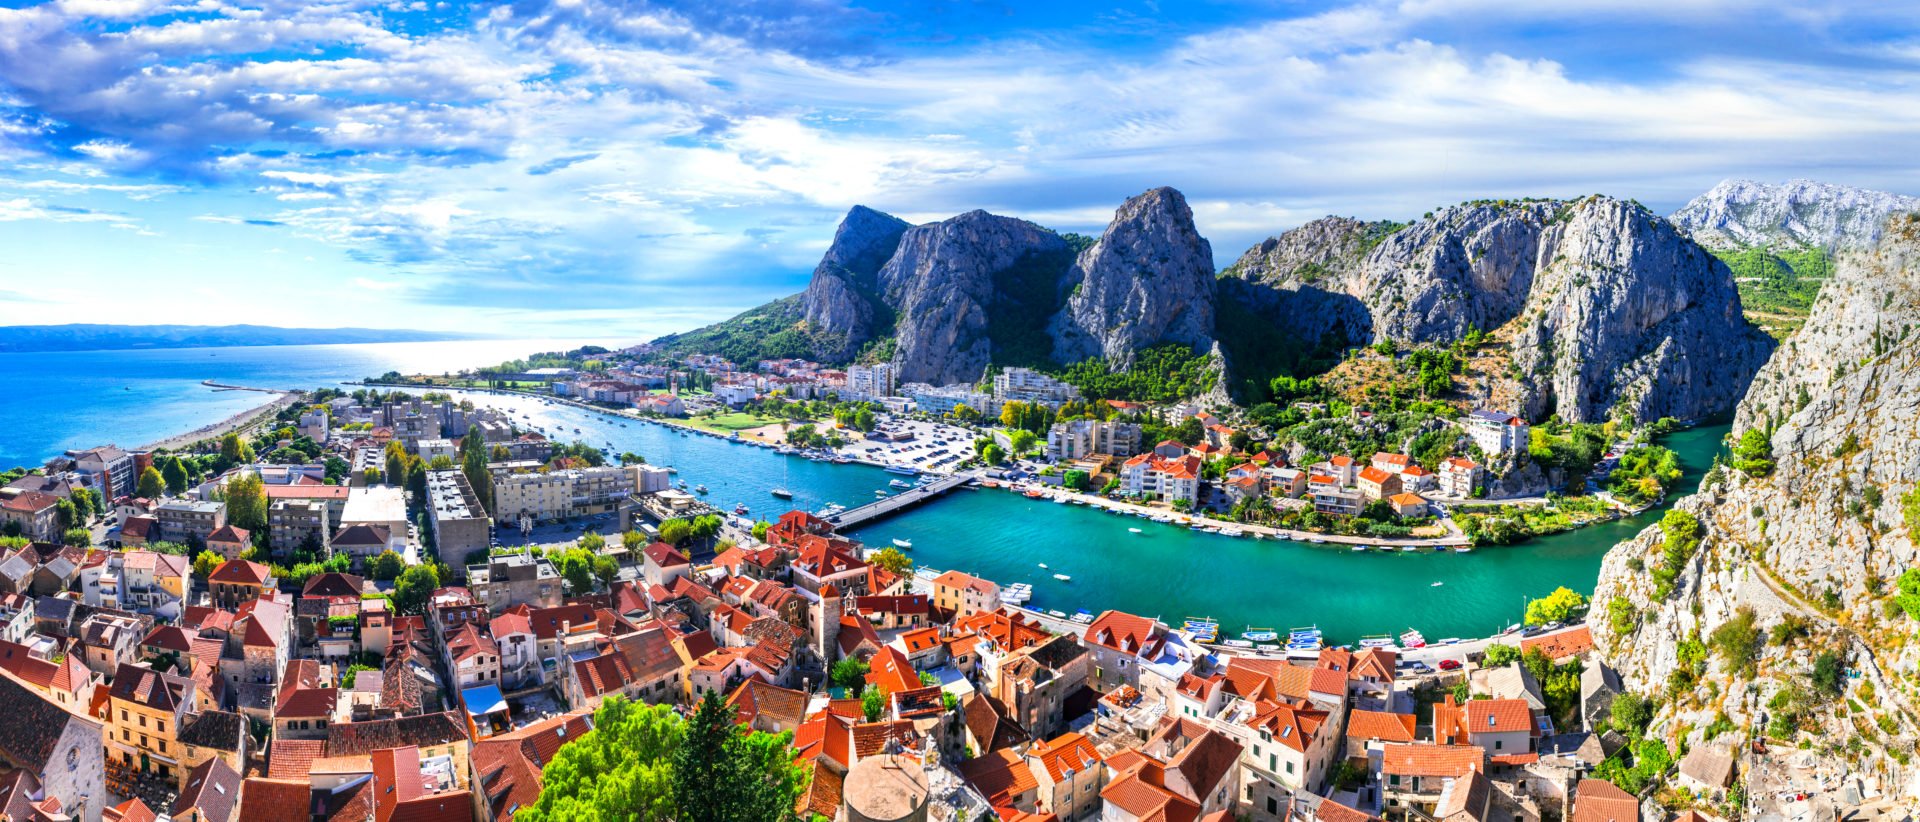 Urlaub in Kroatien - Reiseführer, Infos, Bilder, Karte für euren Urlaub